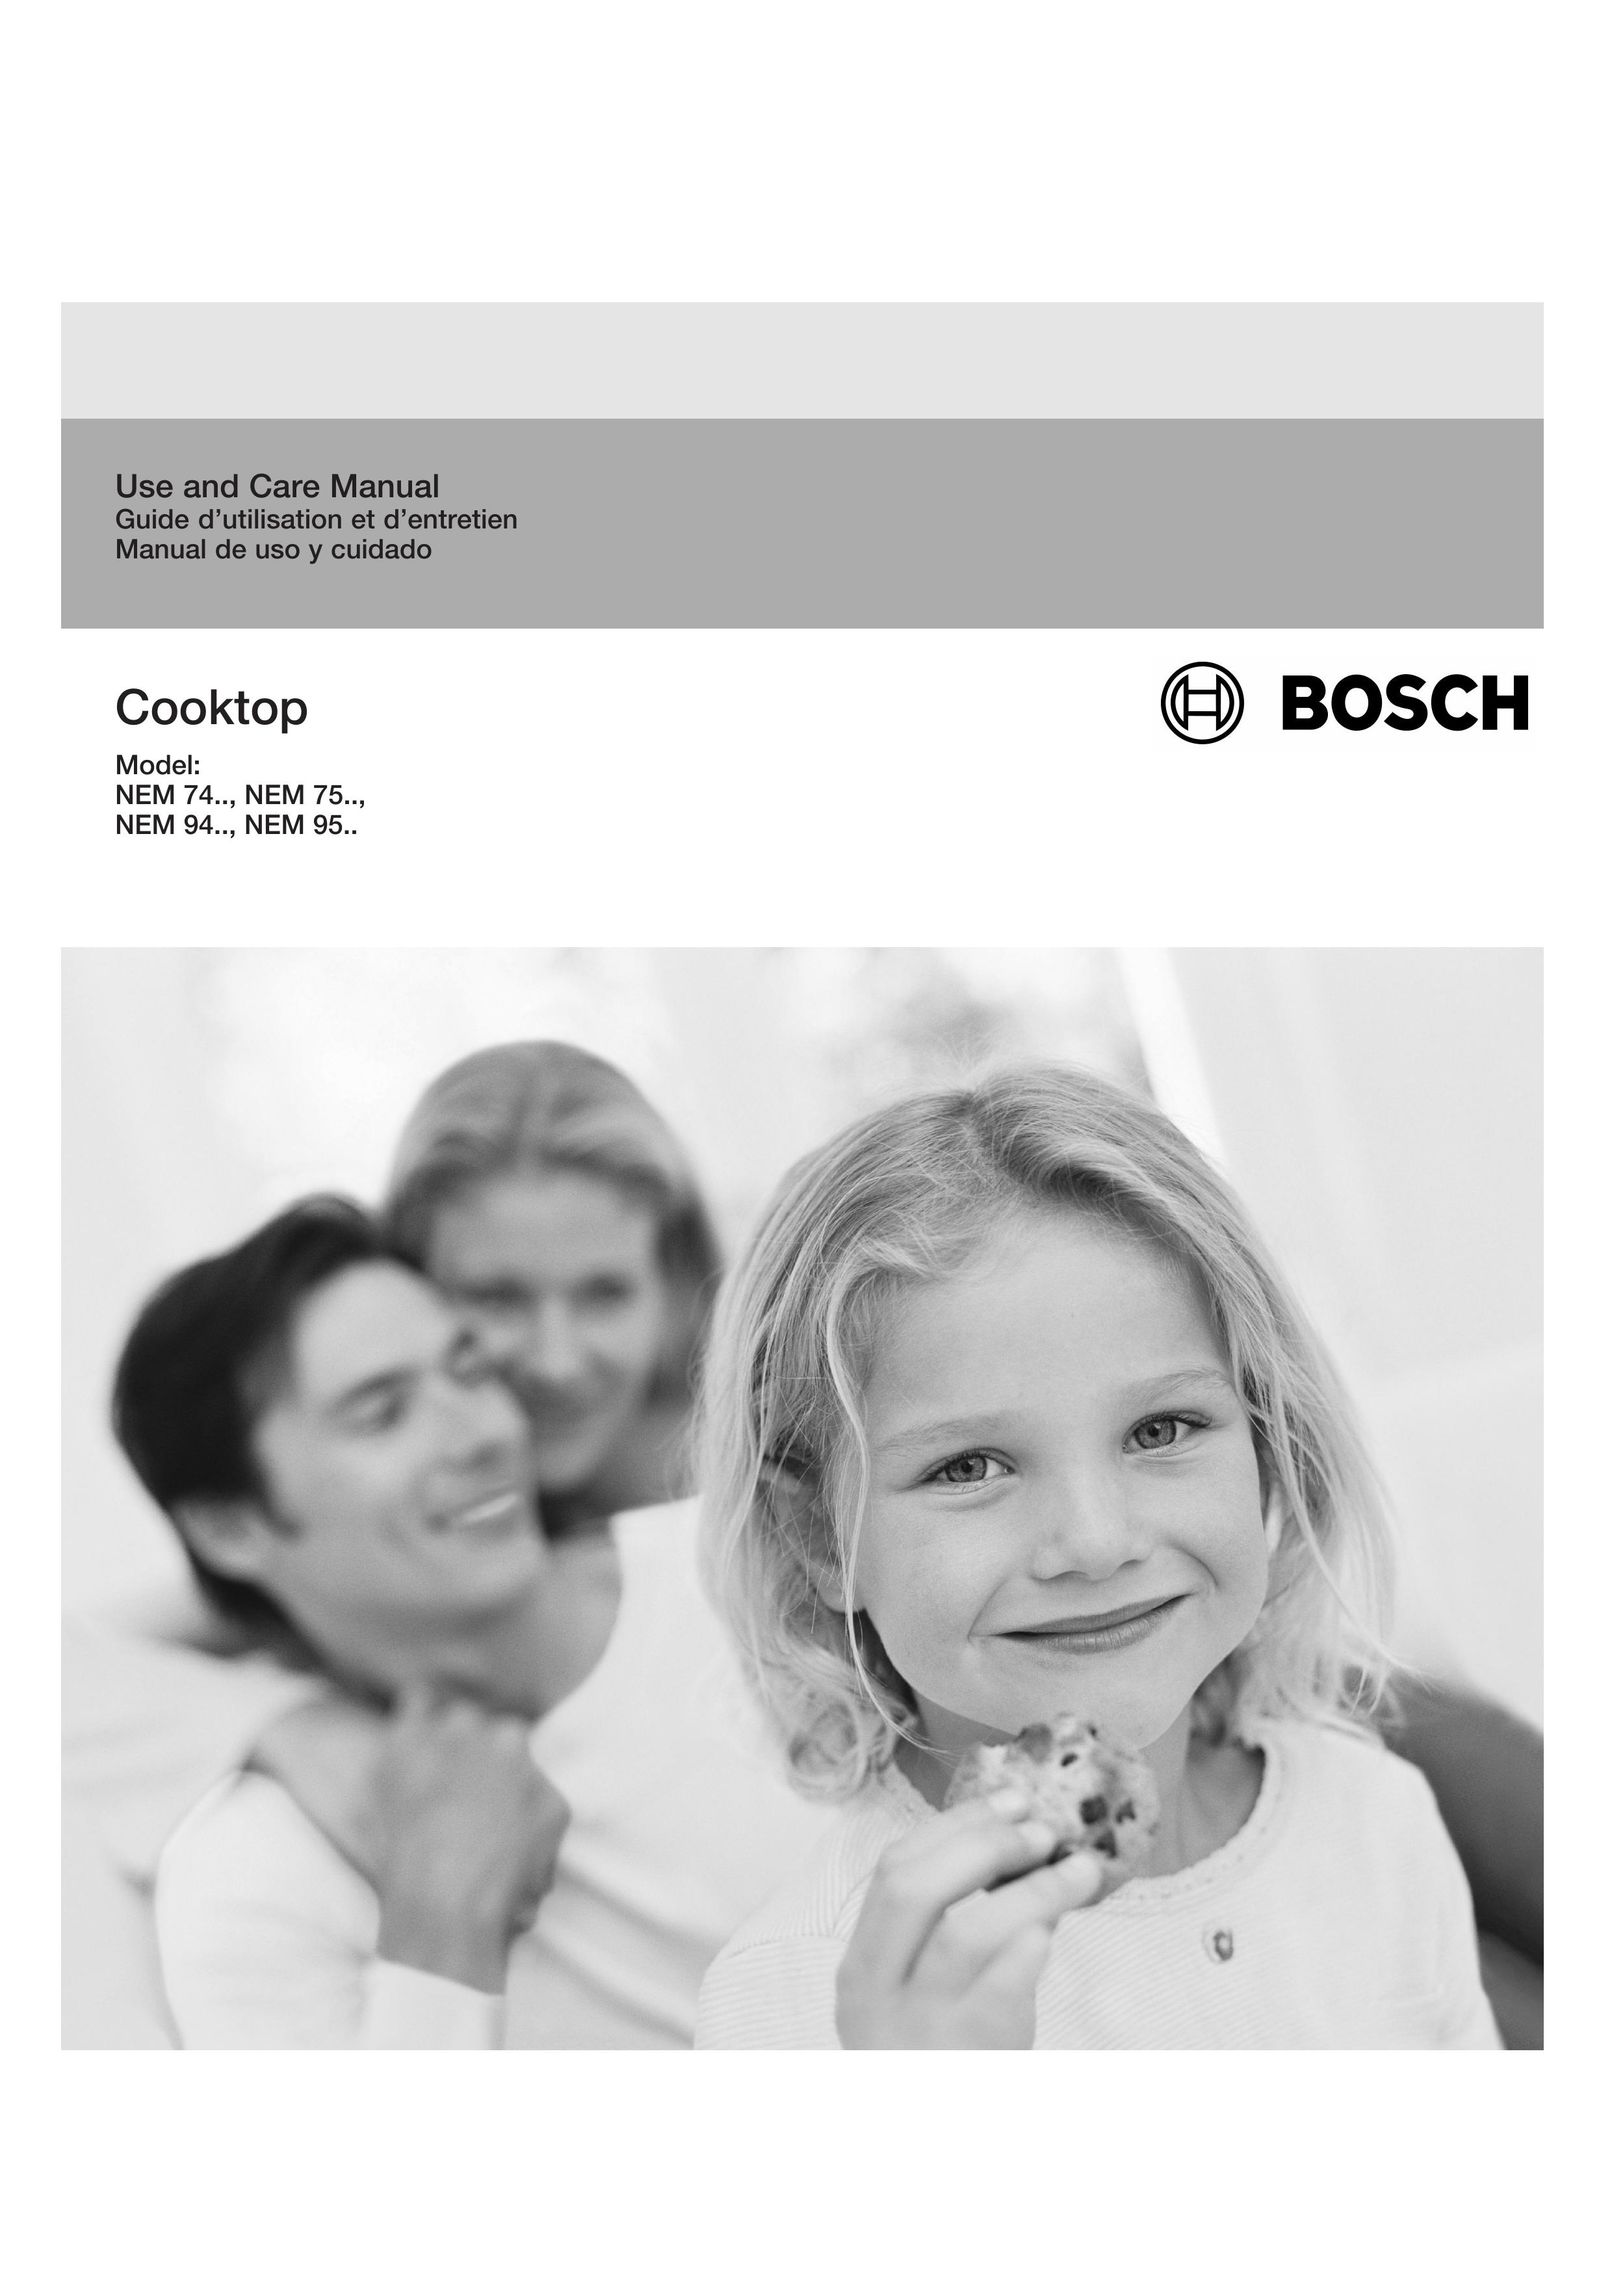 Bosch Appliances NEM 74, NEM 75, NEM 94, NEM 95 Cooktop User Manual